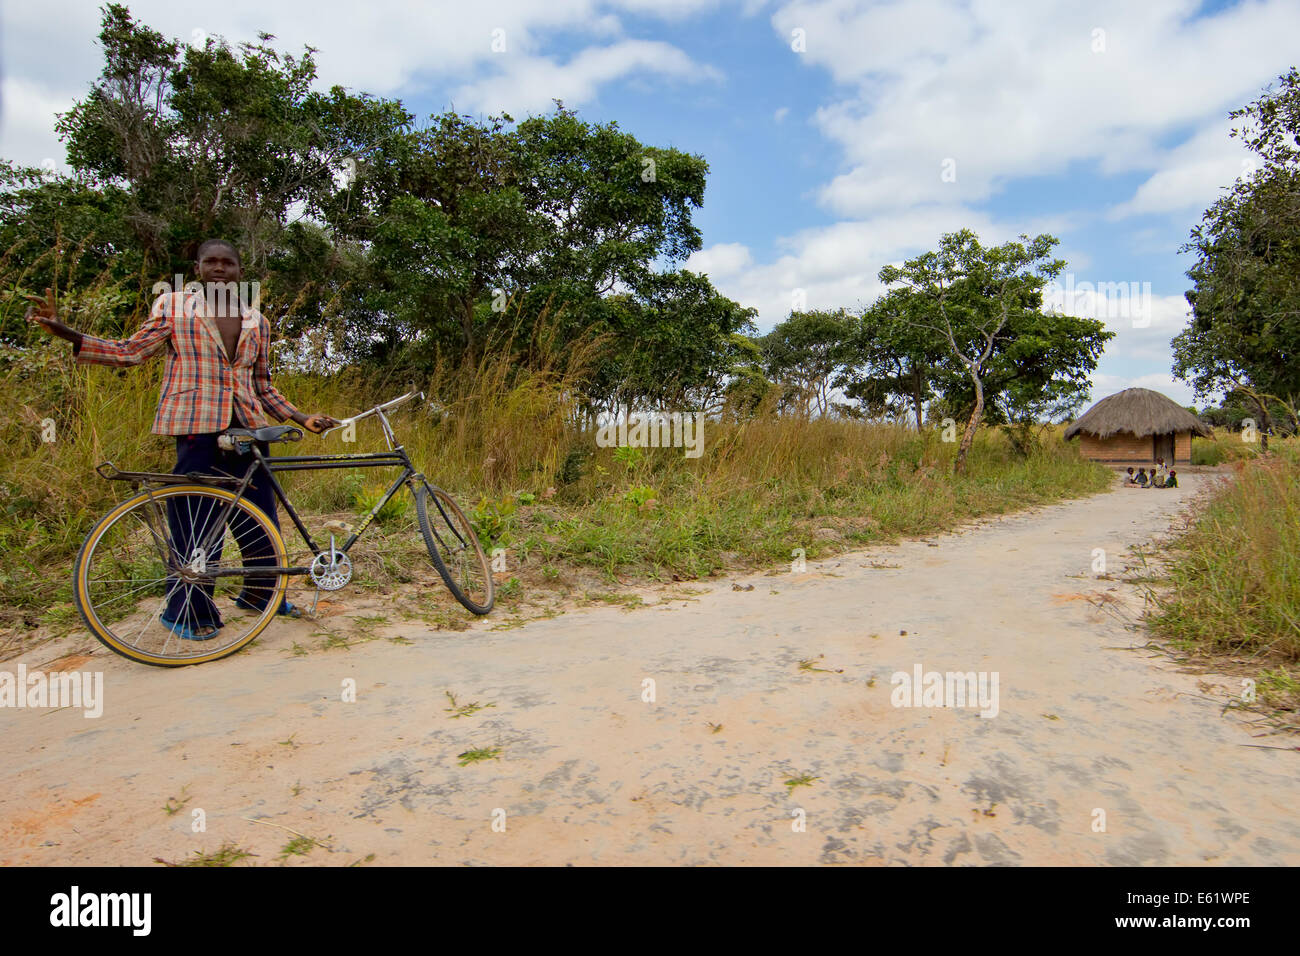 Le vélo est un mode de transport principal pour les personnes vivant dans les villages entourant les terres humides Bangweulu en Zambie. Banque D'Images